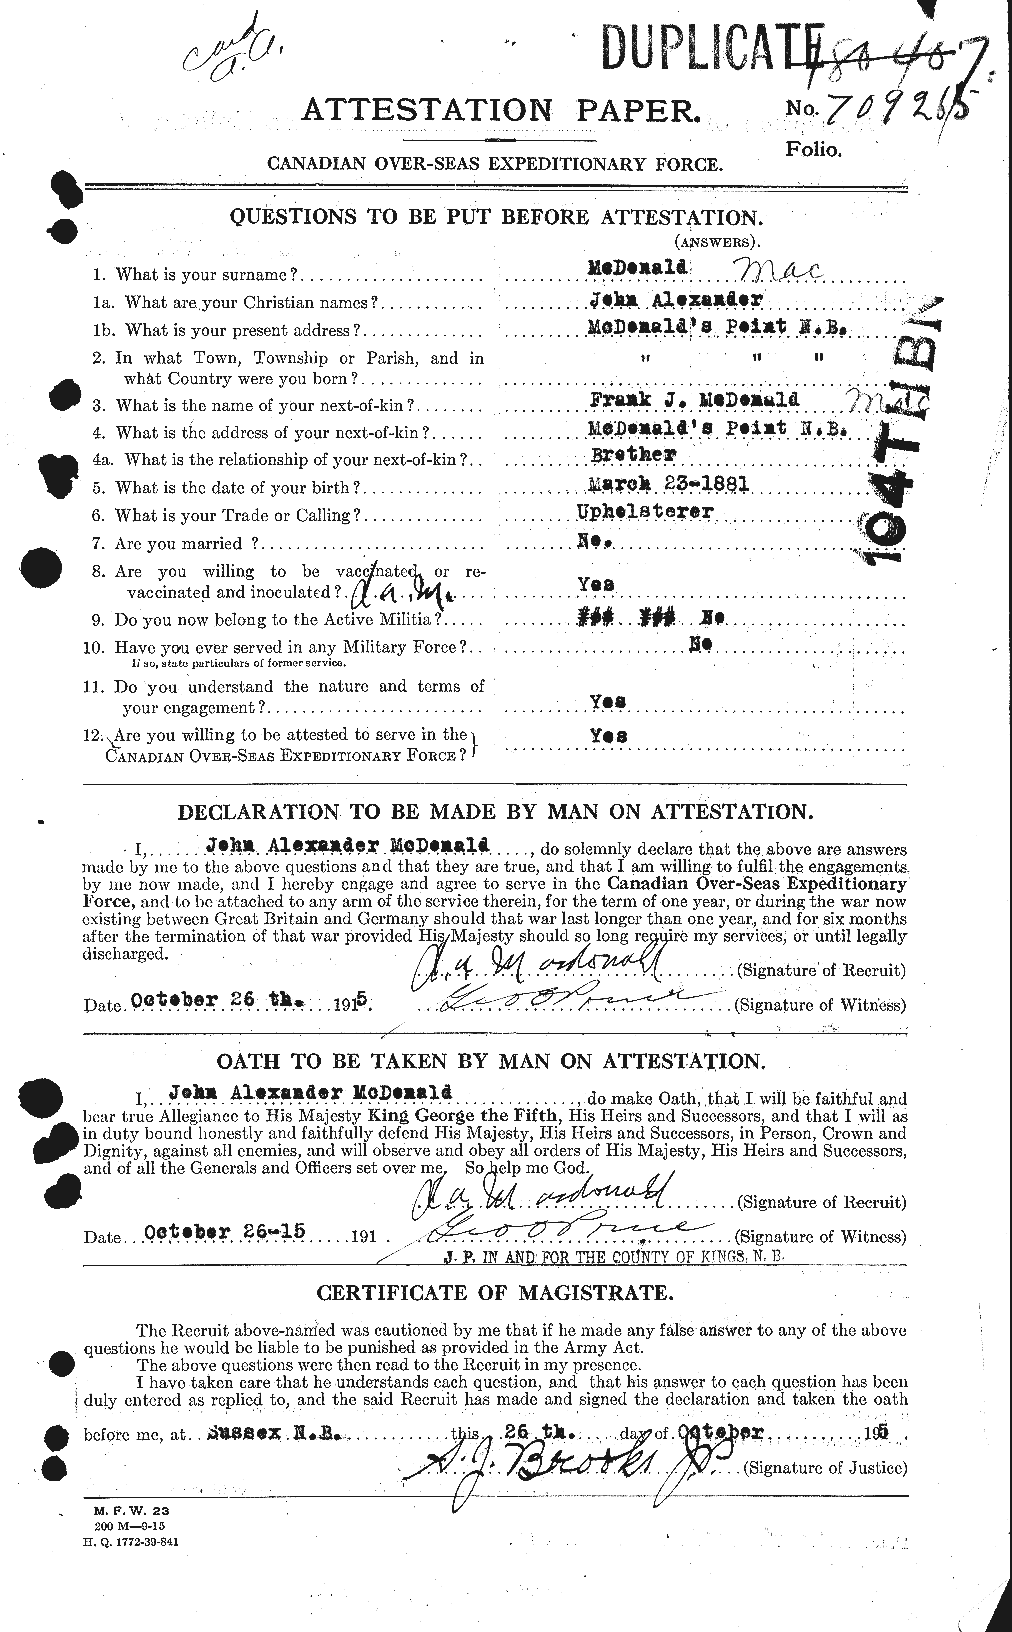 Dossiers du Personnel de la Première Guerre mondiale - CEC 516499a